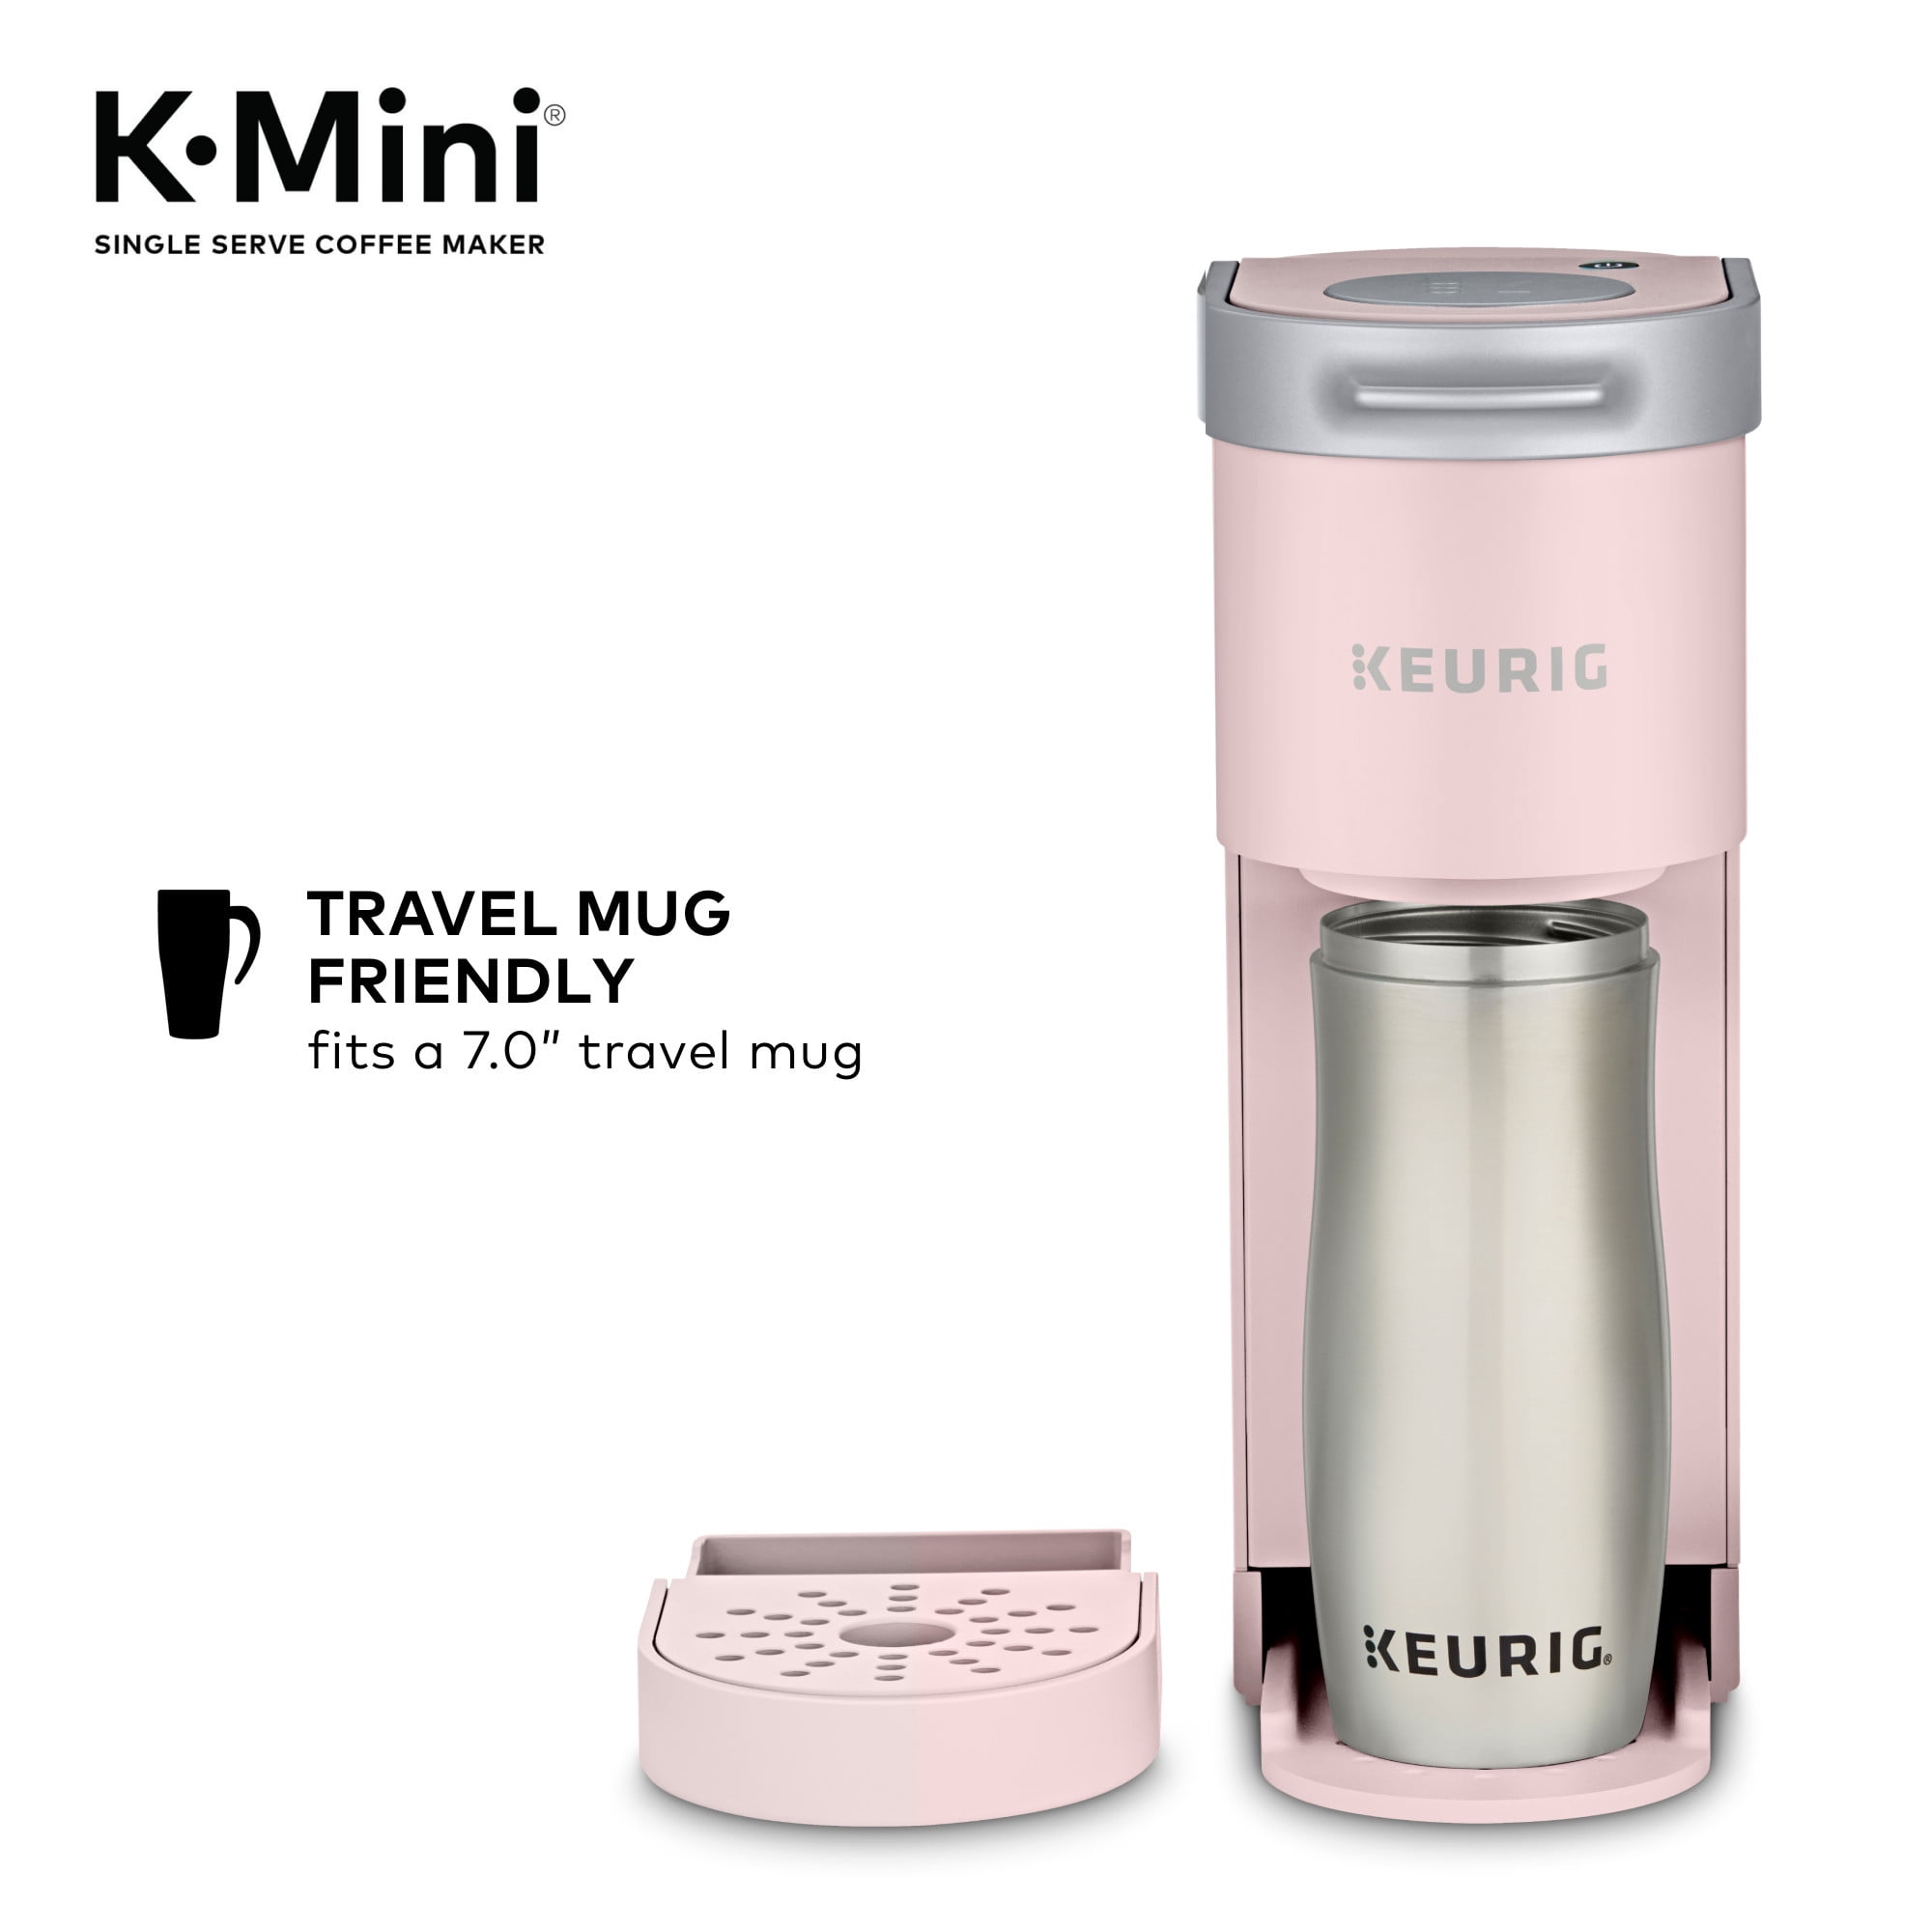 Keurig K-Mini Plus Single Serve K-Cup Pod Coffee Maker, Dusty Rose Coffee  Maker - AliExpress